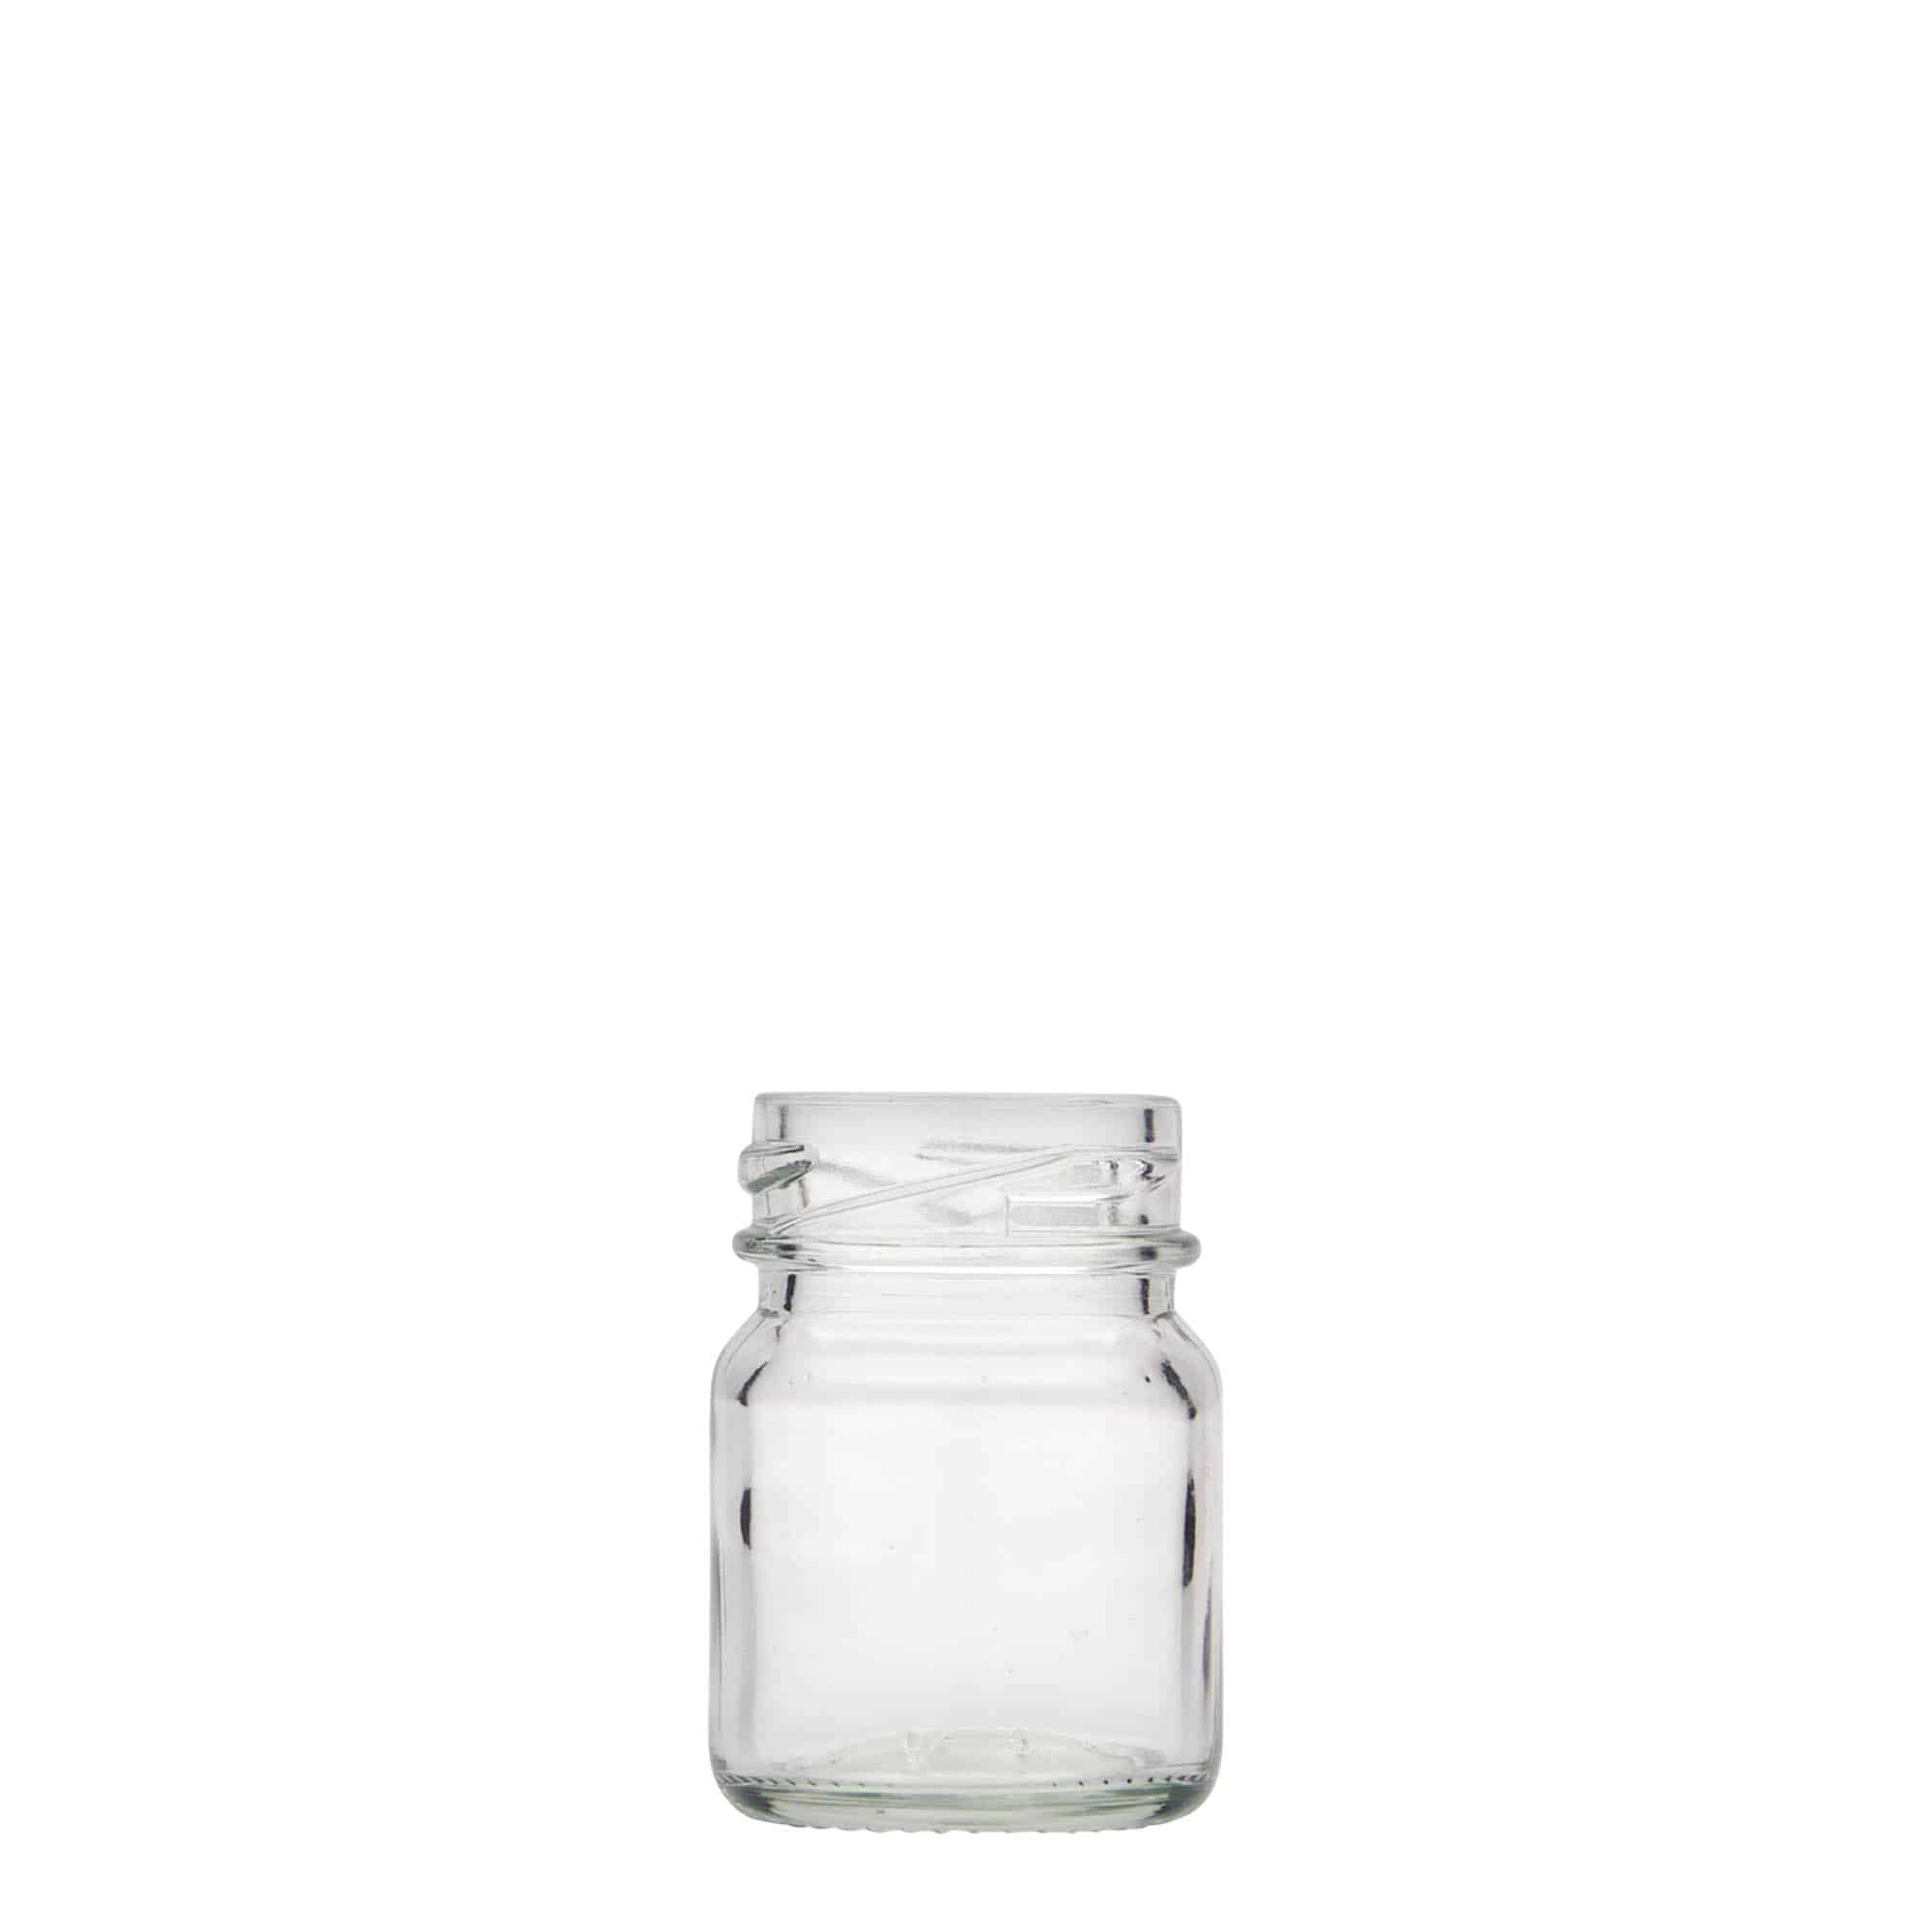 45 ml tall round jar, closure: twist off (TO 38)